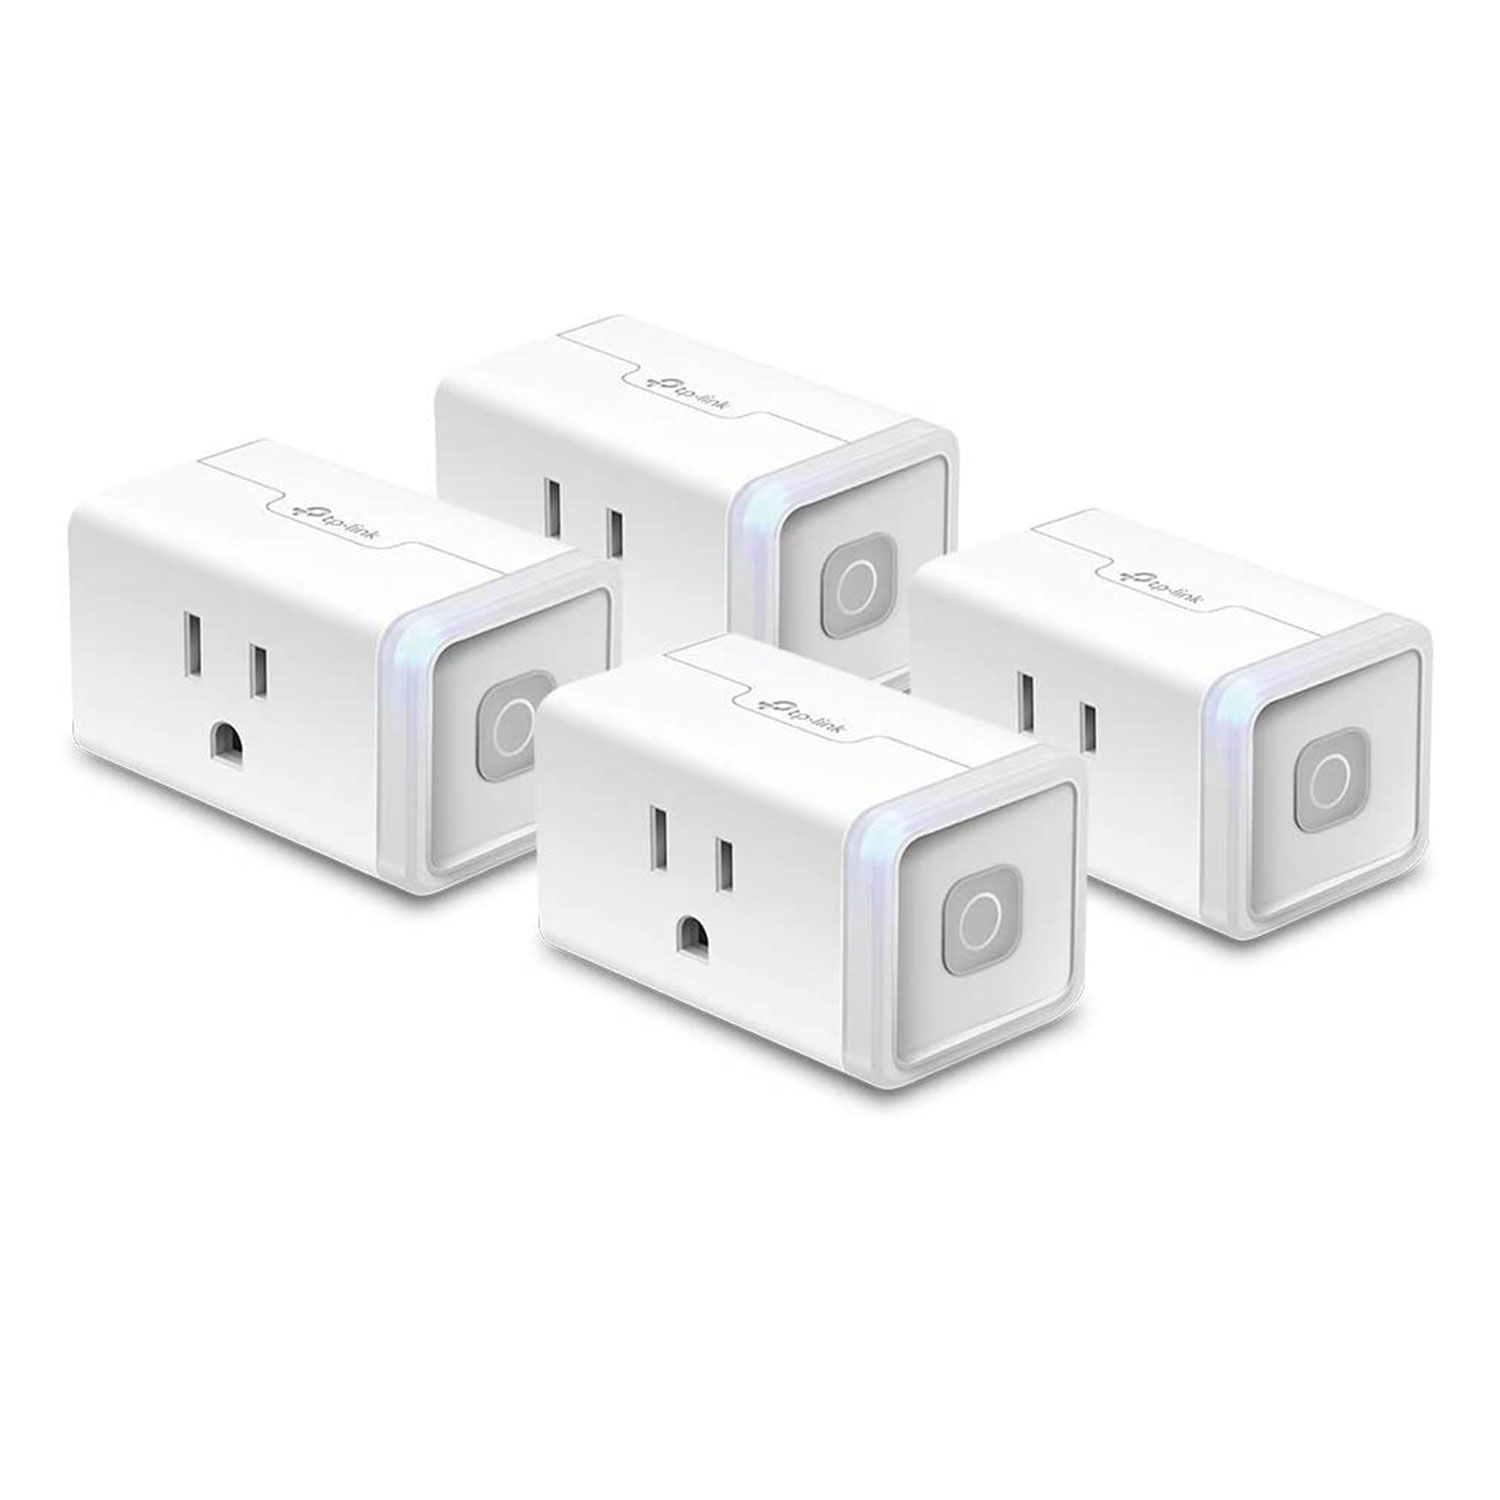 kasa smart plug smart home wifi outlet